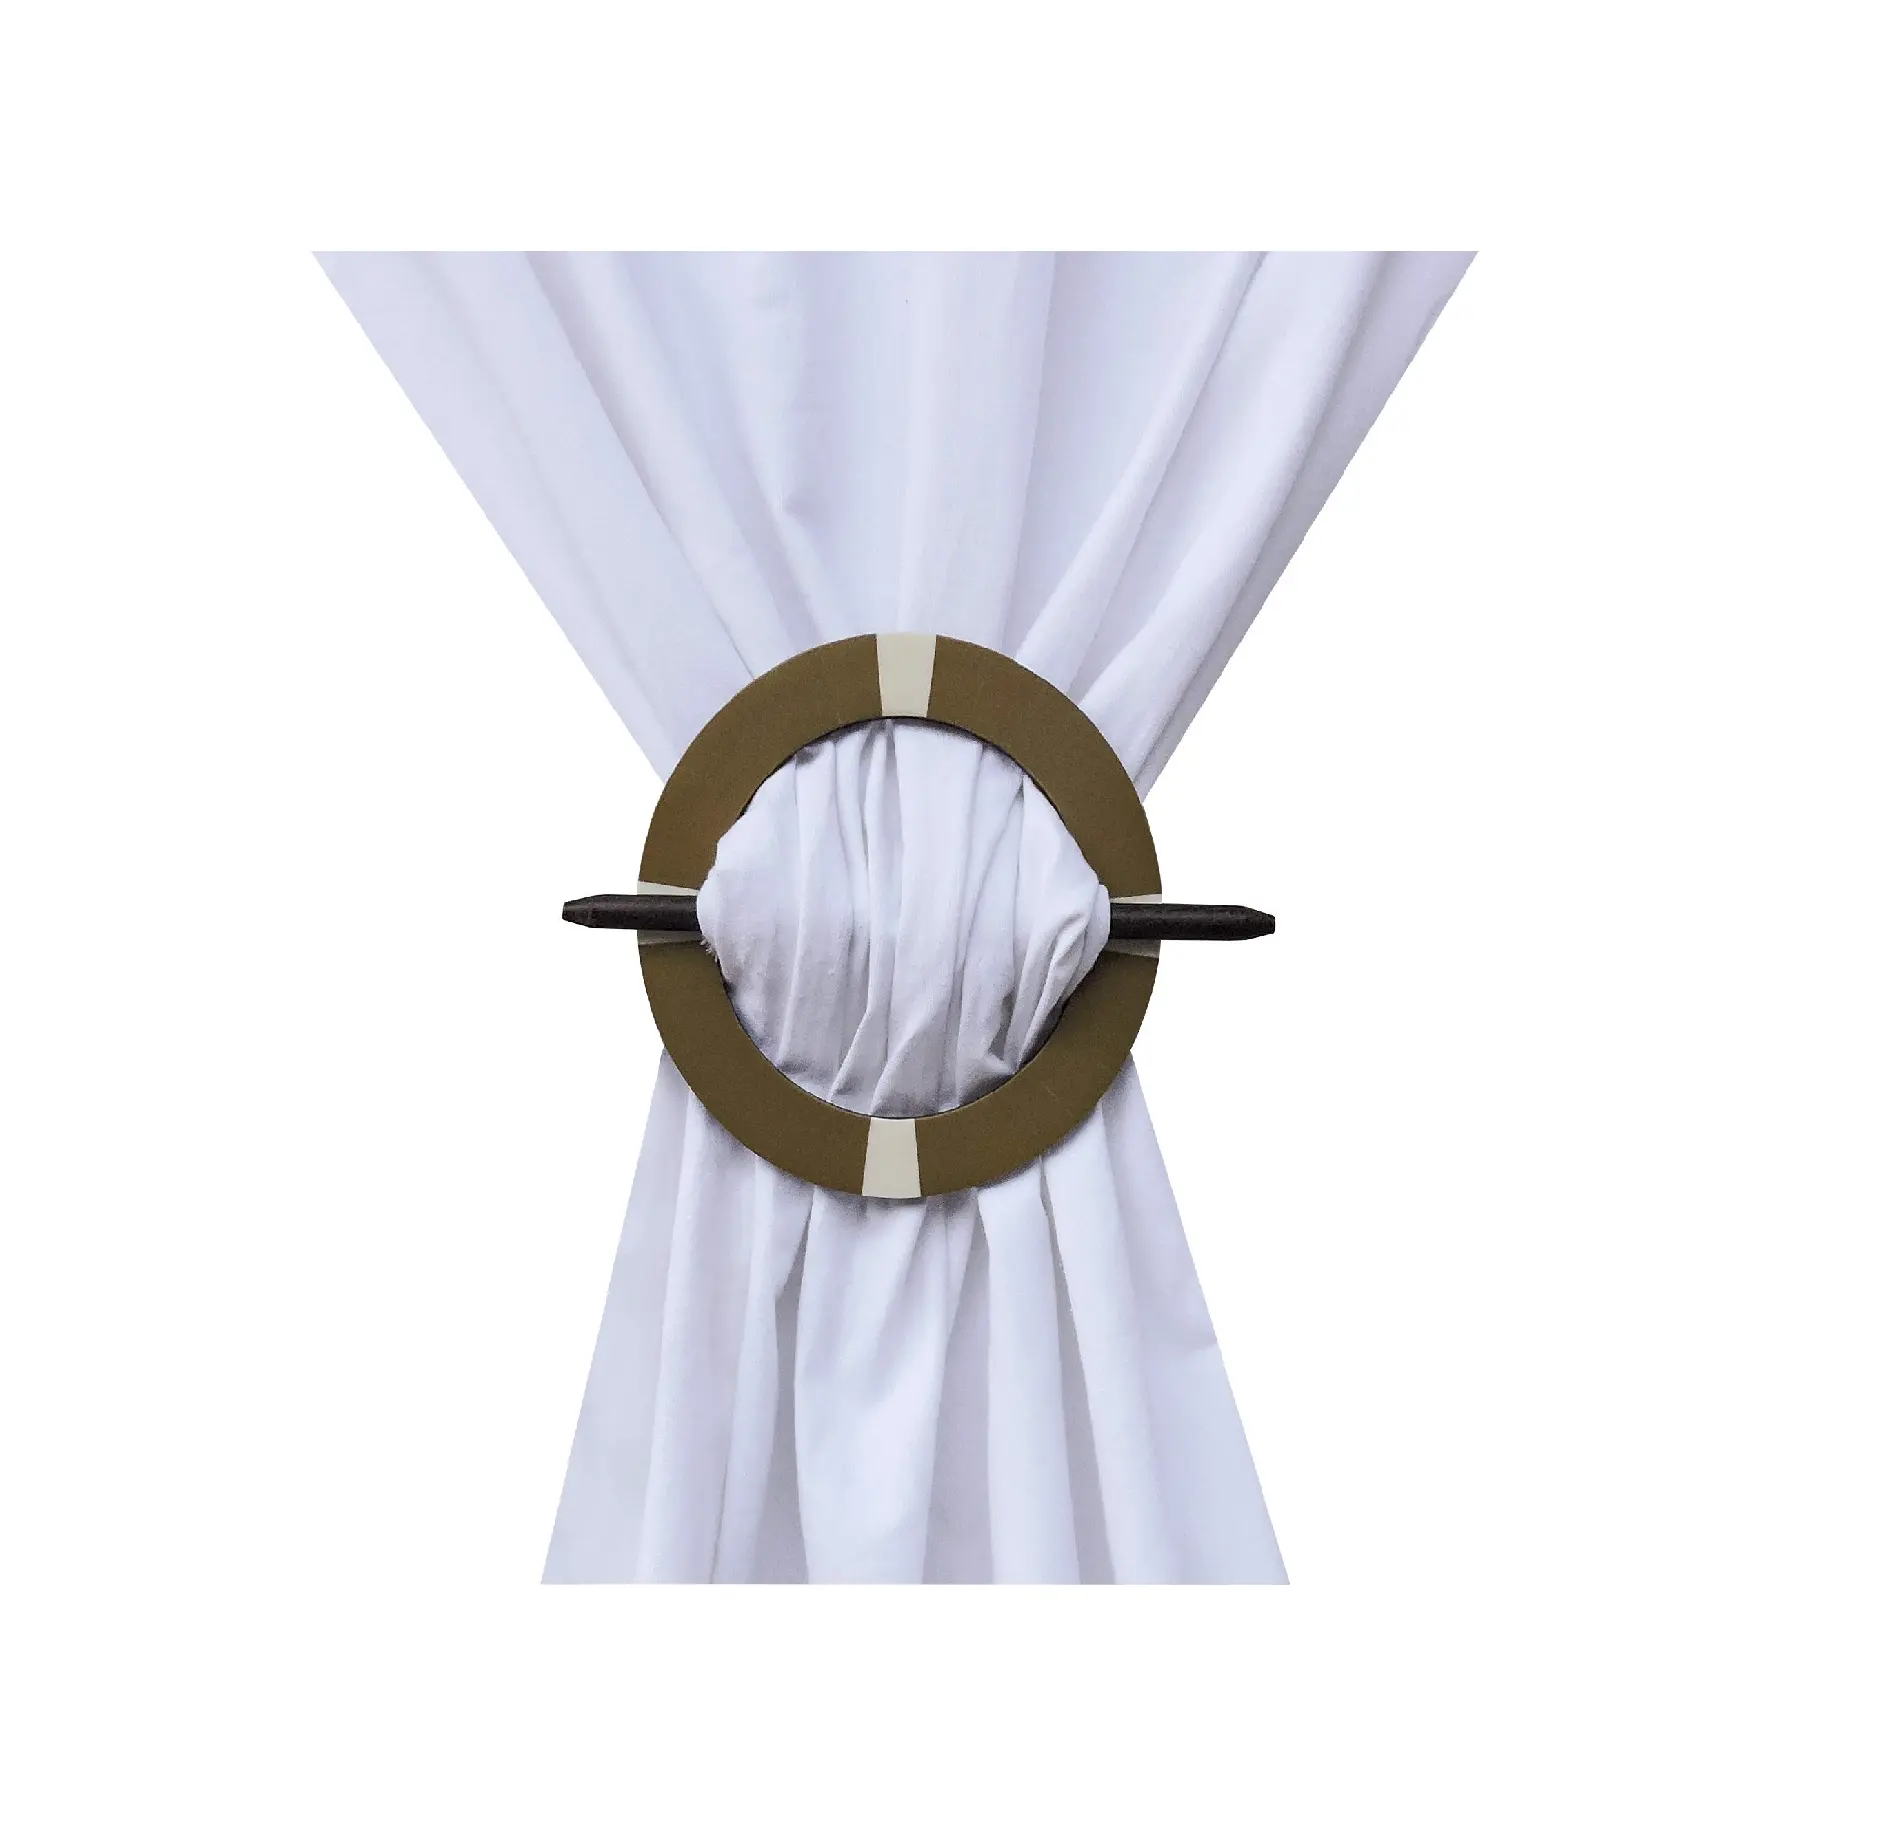 Corbata de cortina de madera, accesorios de decoración del hogar, corbata de cortina de lujo moderna, forma redonda con cortina de palo